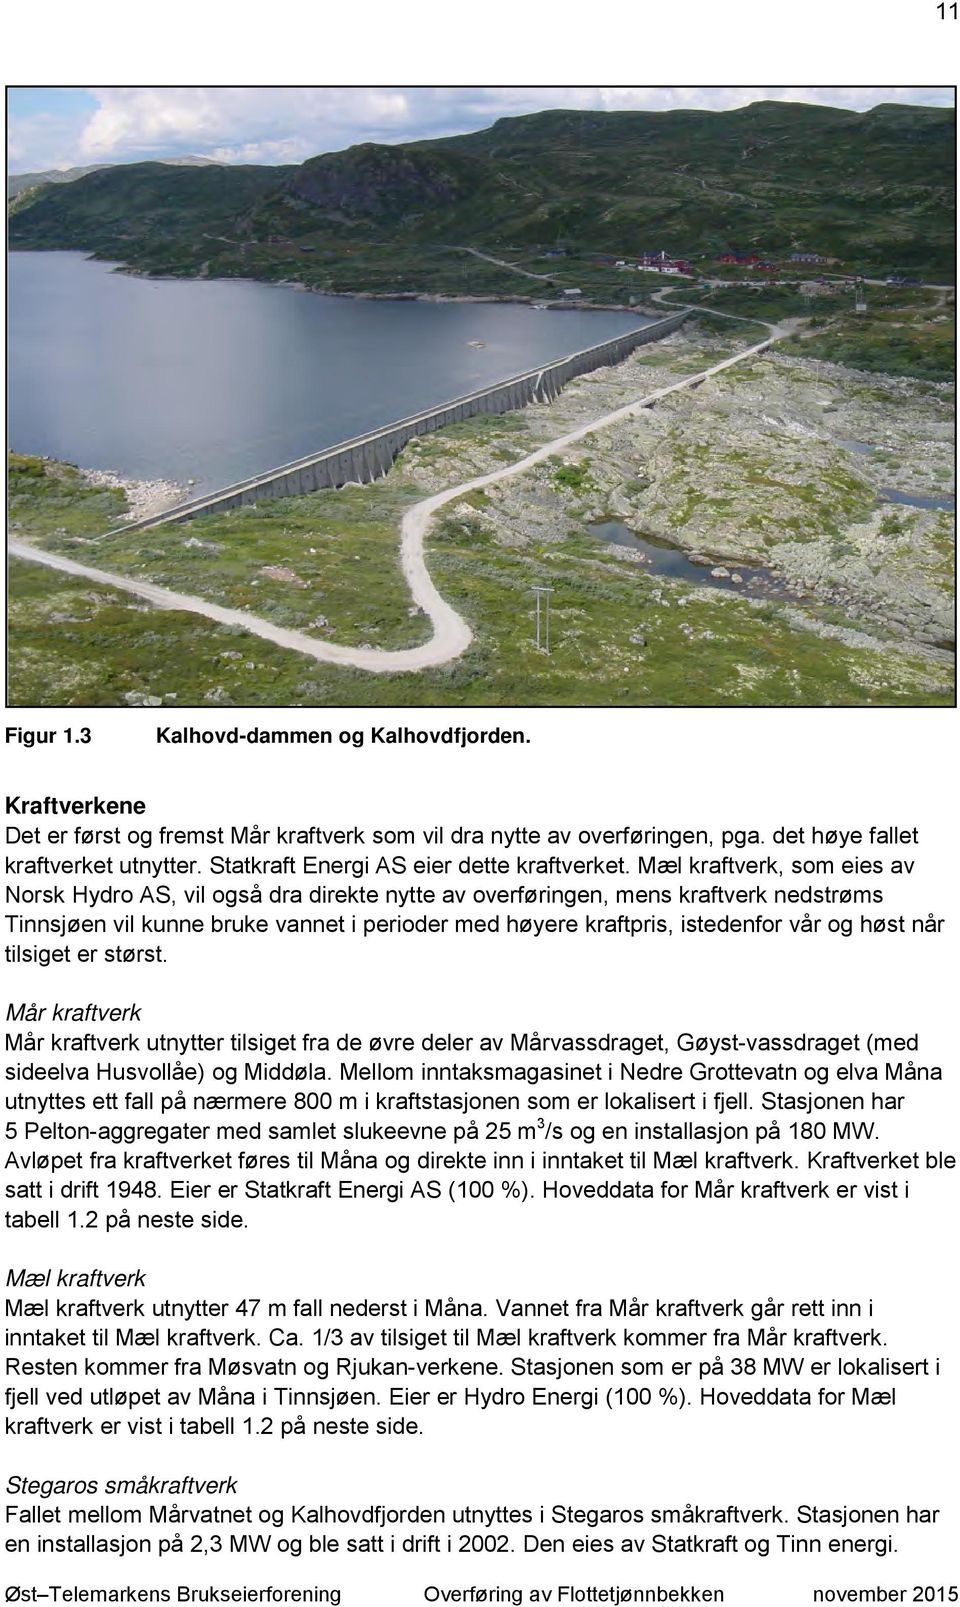 Mæl kraftverk, som eies av Norsk Hydro AS, vil også dra direkte nytte av overføringen, mens kraftverk nedstrøms Tinnsjøen vil kunne bruke vannet i perioder med høyere kraftpris, istedenfor vår og